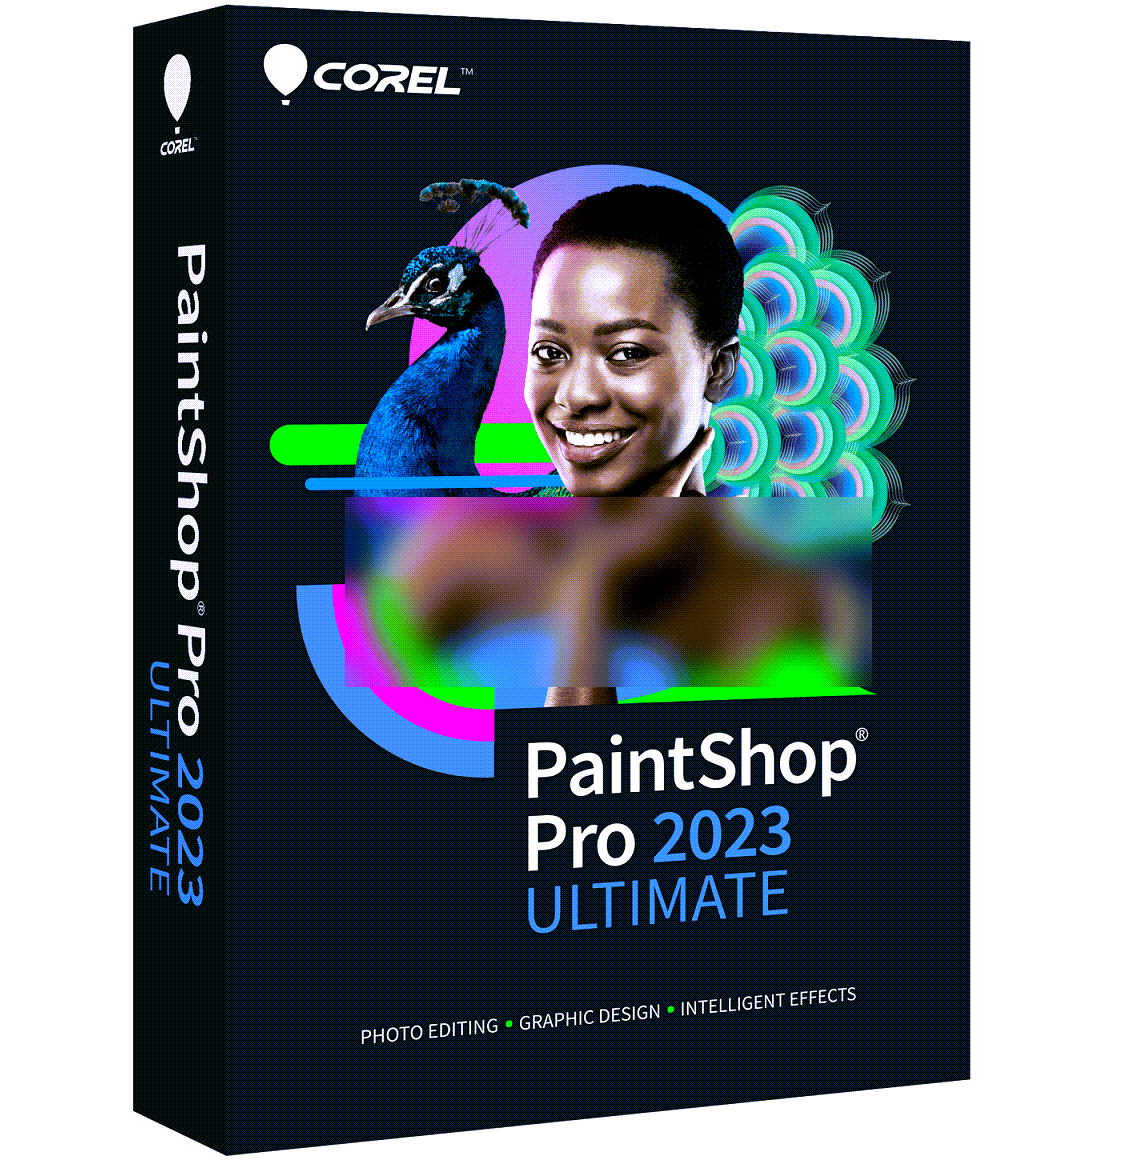 Corel PaintShop Pro 2023 Ultimate 25.0.0.122 x64 Multilingual